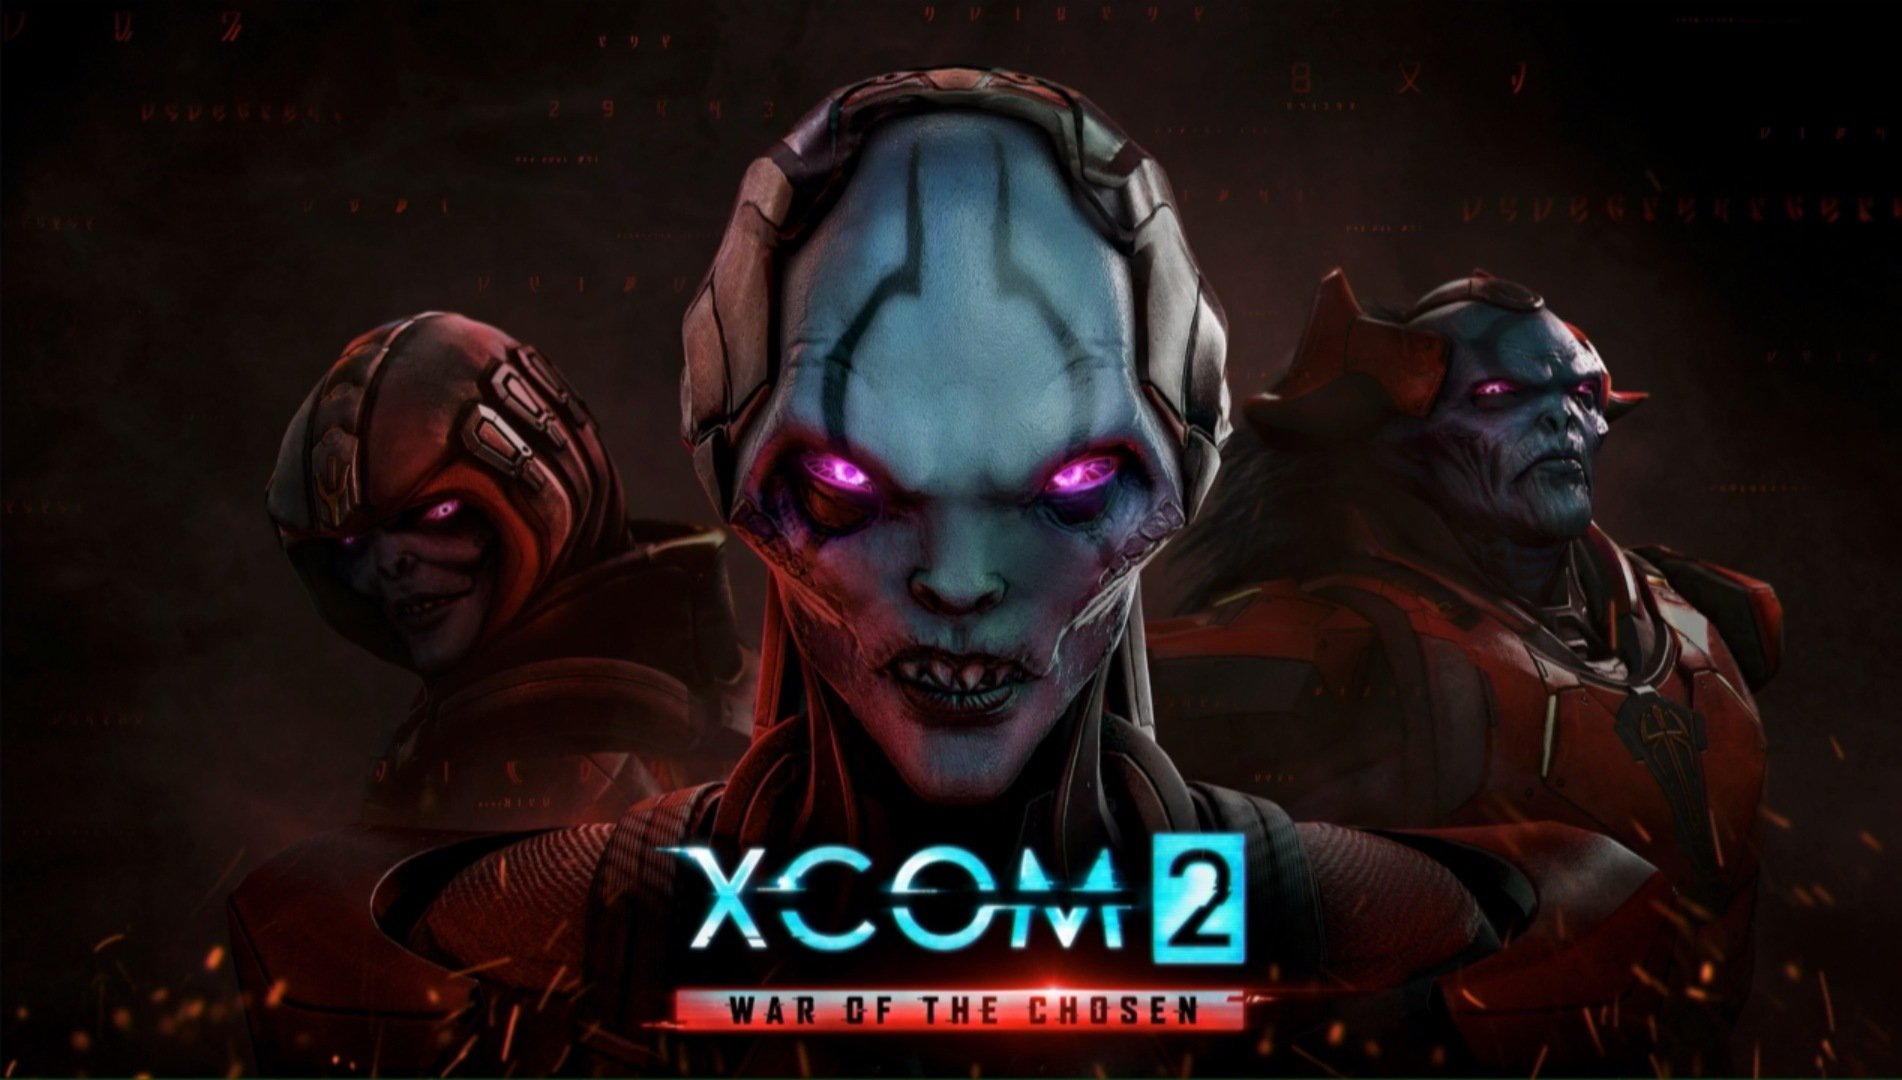 XCOM 2 War of the Chosen Free Download Full Version PC Game Setup